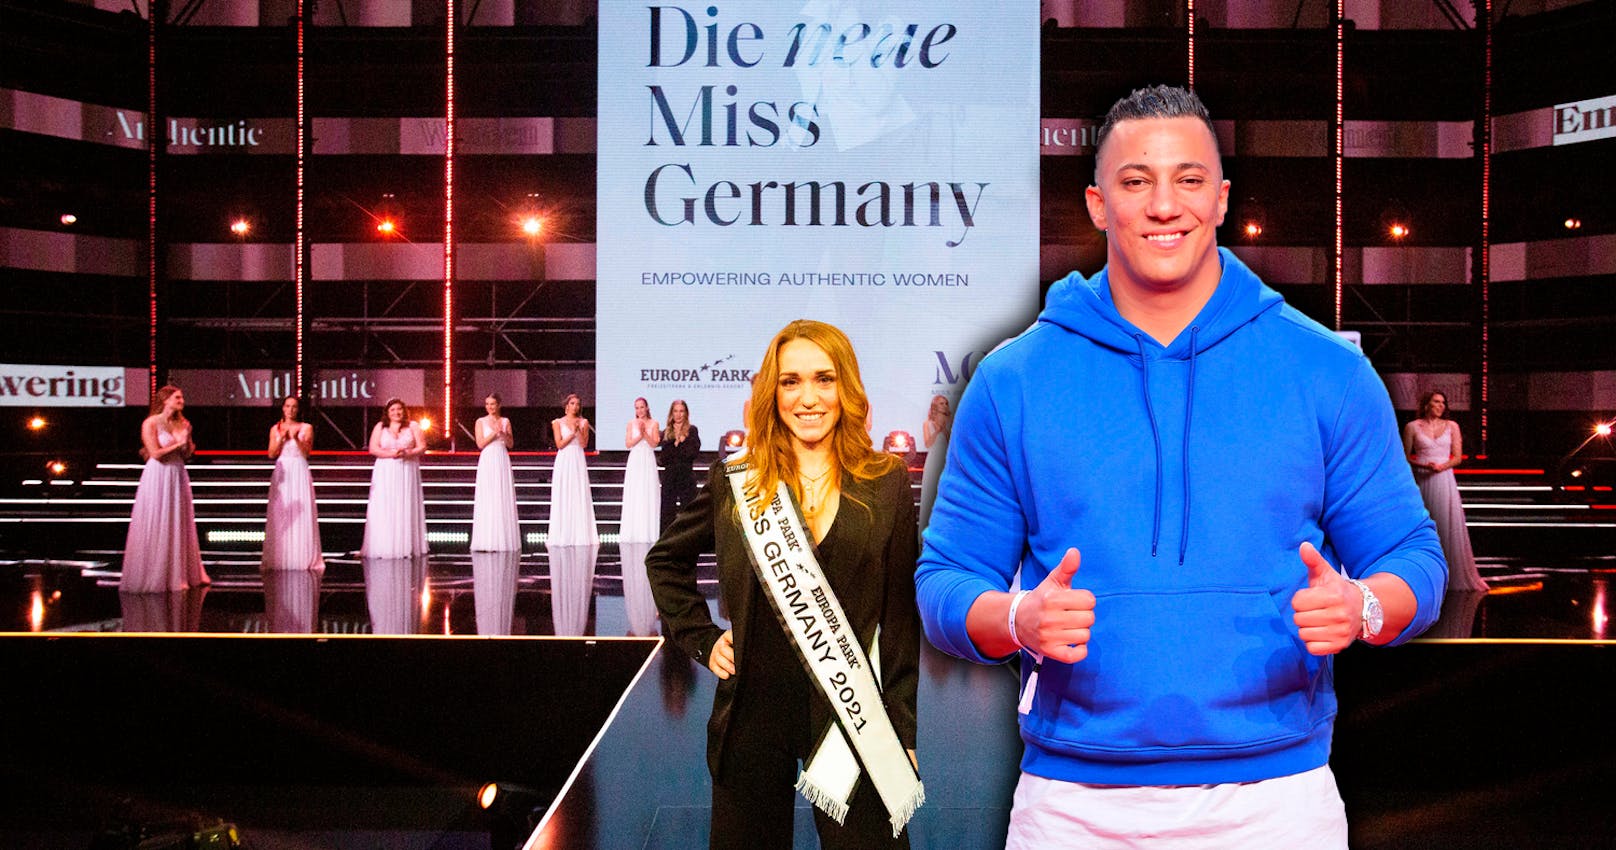 Anja Kallenbach ist die aktuelle Miss Germany. Das ist die Dame in der Mitte des Bildes. Aber irgendwie scheint das den meisten egal zu sein.